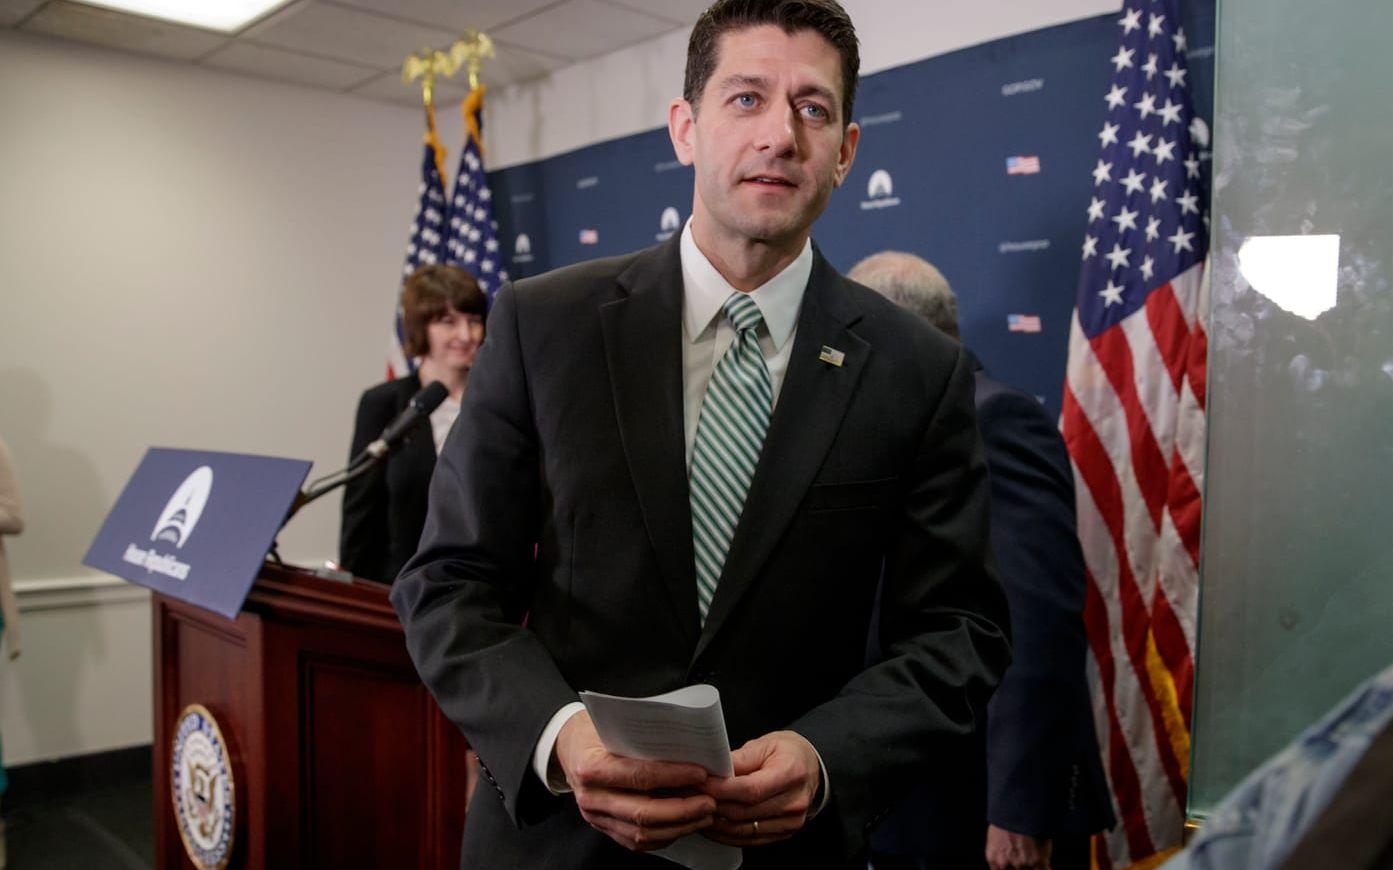 4 APRIL: Paul Ryan efter en nyhetskonferens om att på nytt få till en reform av sjukförsäkringssystemet. Foto: TT